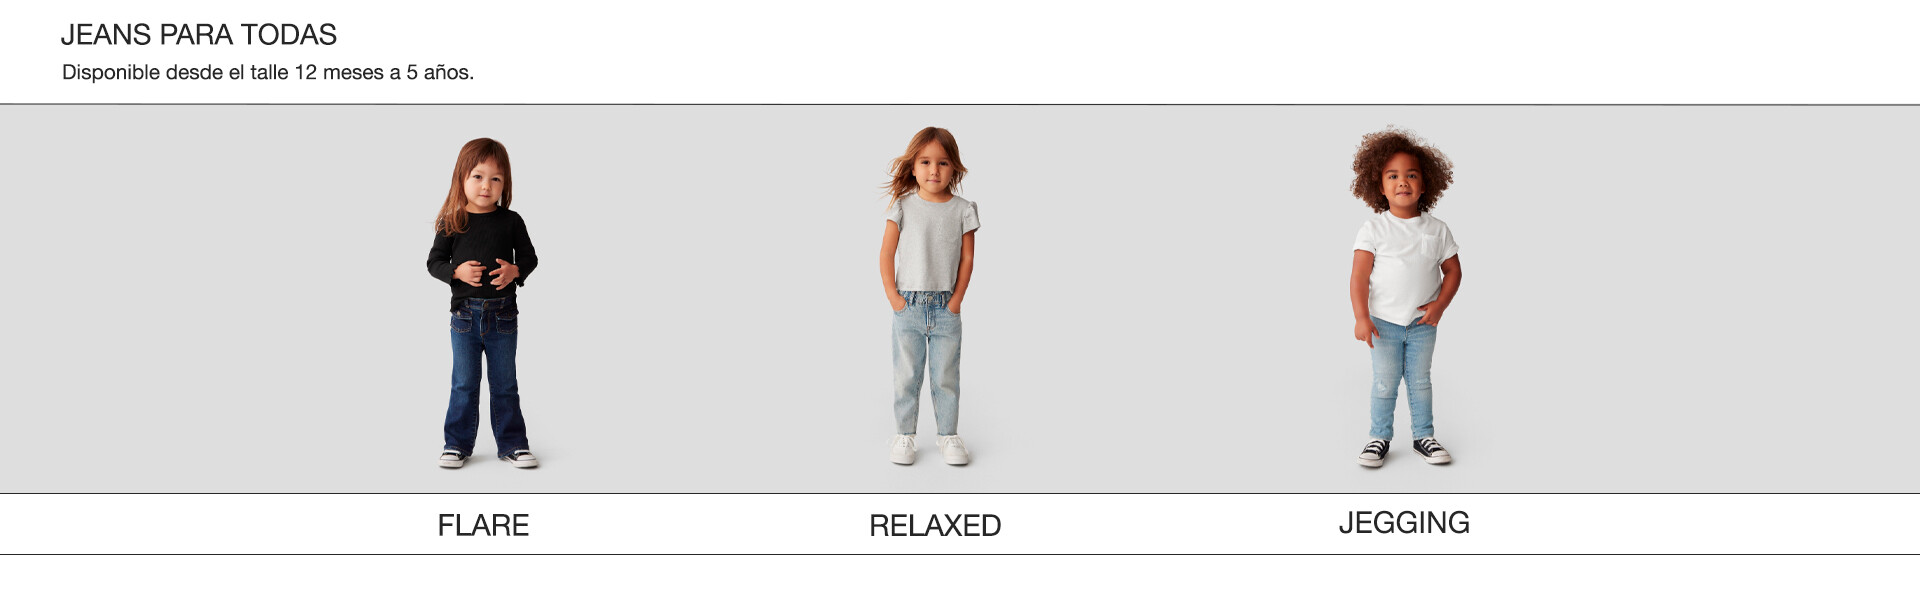 Jeans para toddler girl